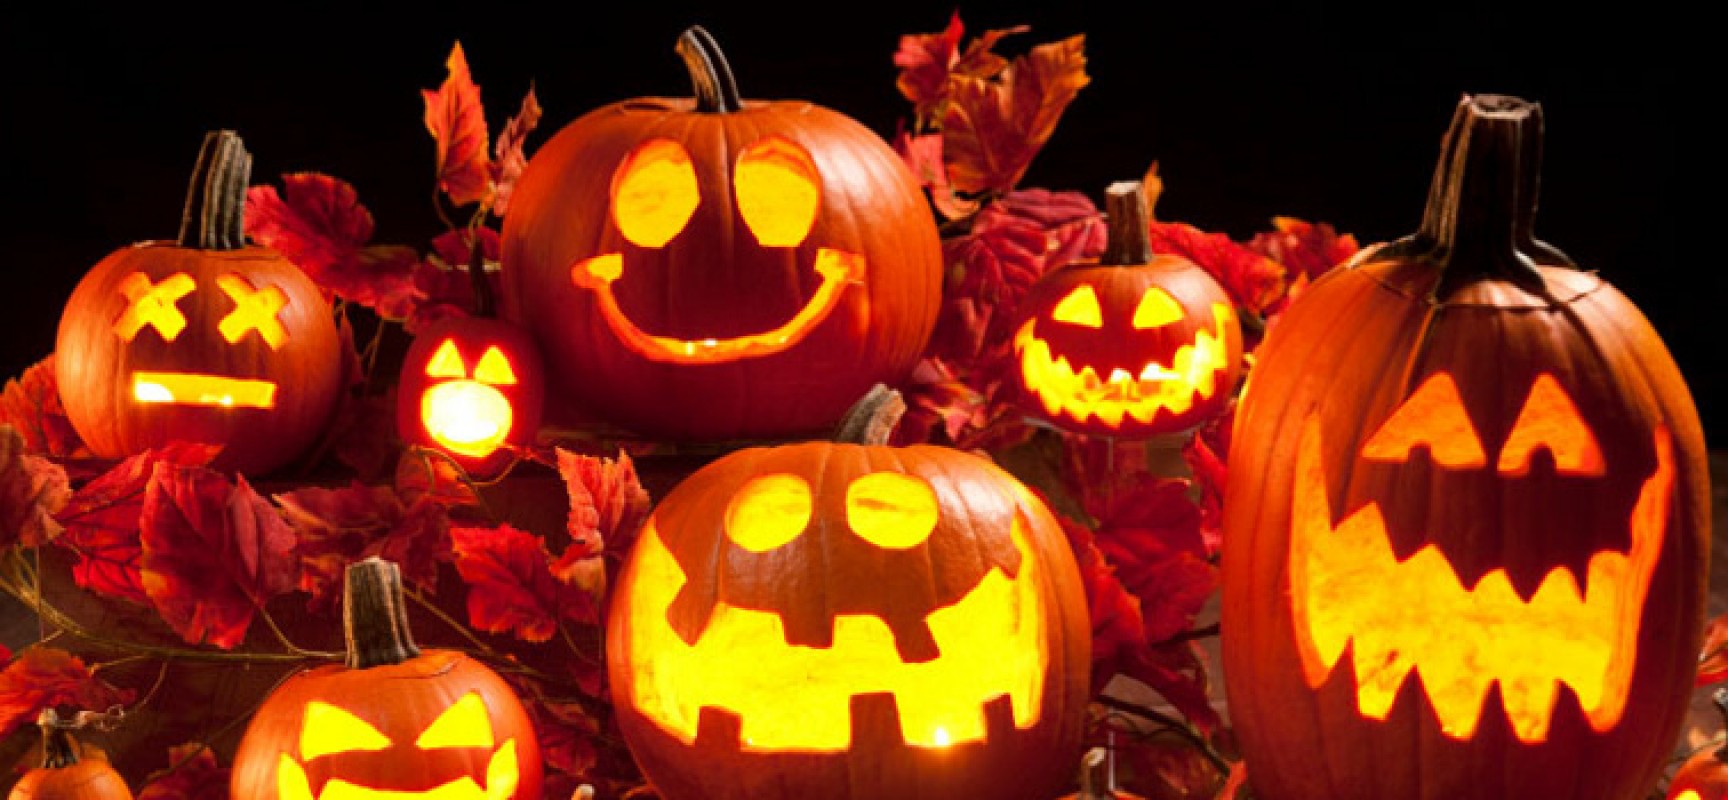 Sabato 31 ottobre arriva per i più piccoli il “Villaggio di Halloween”